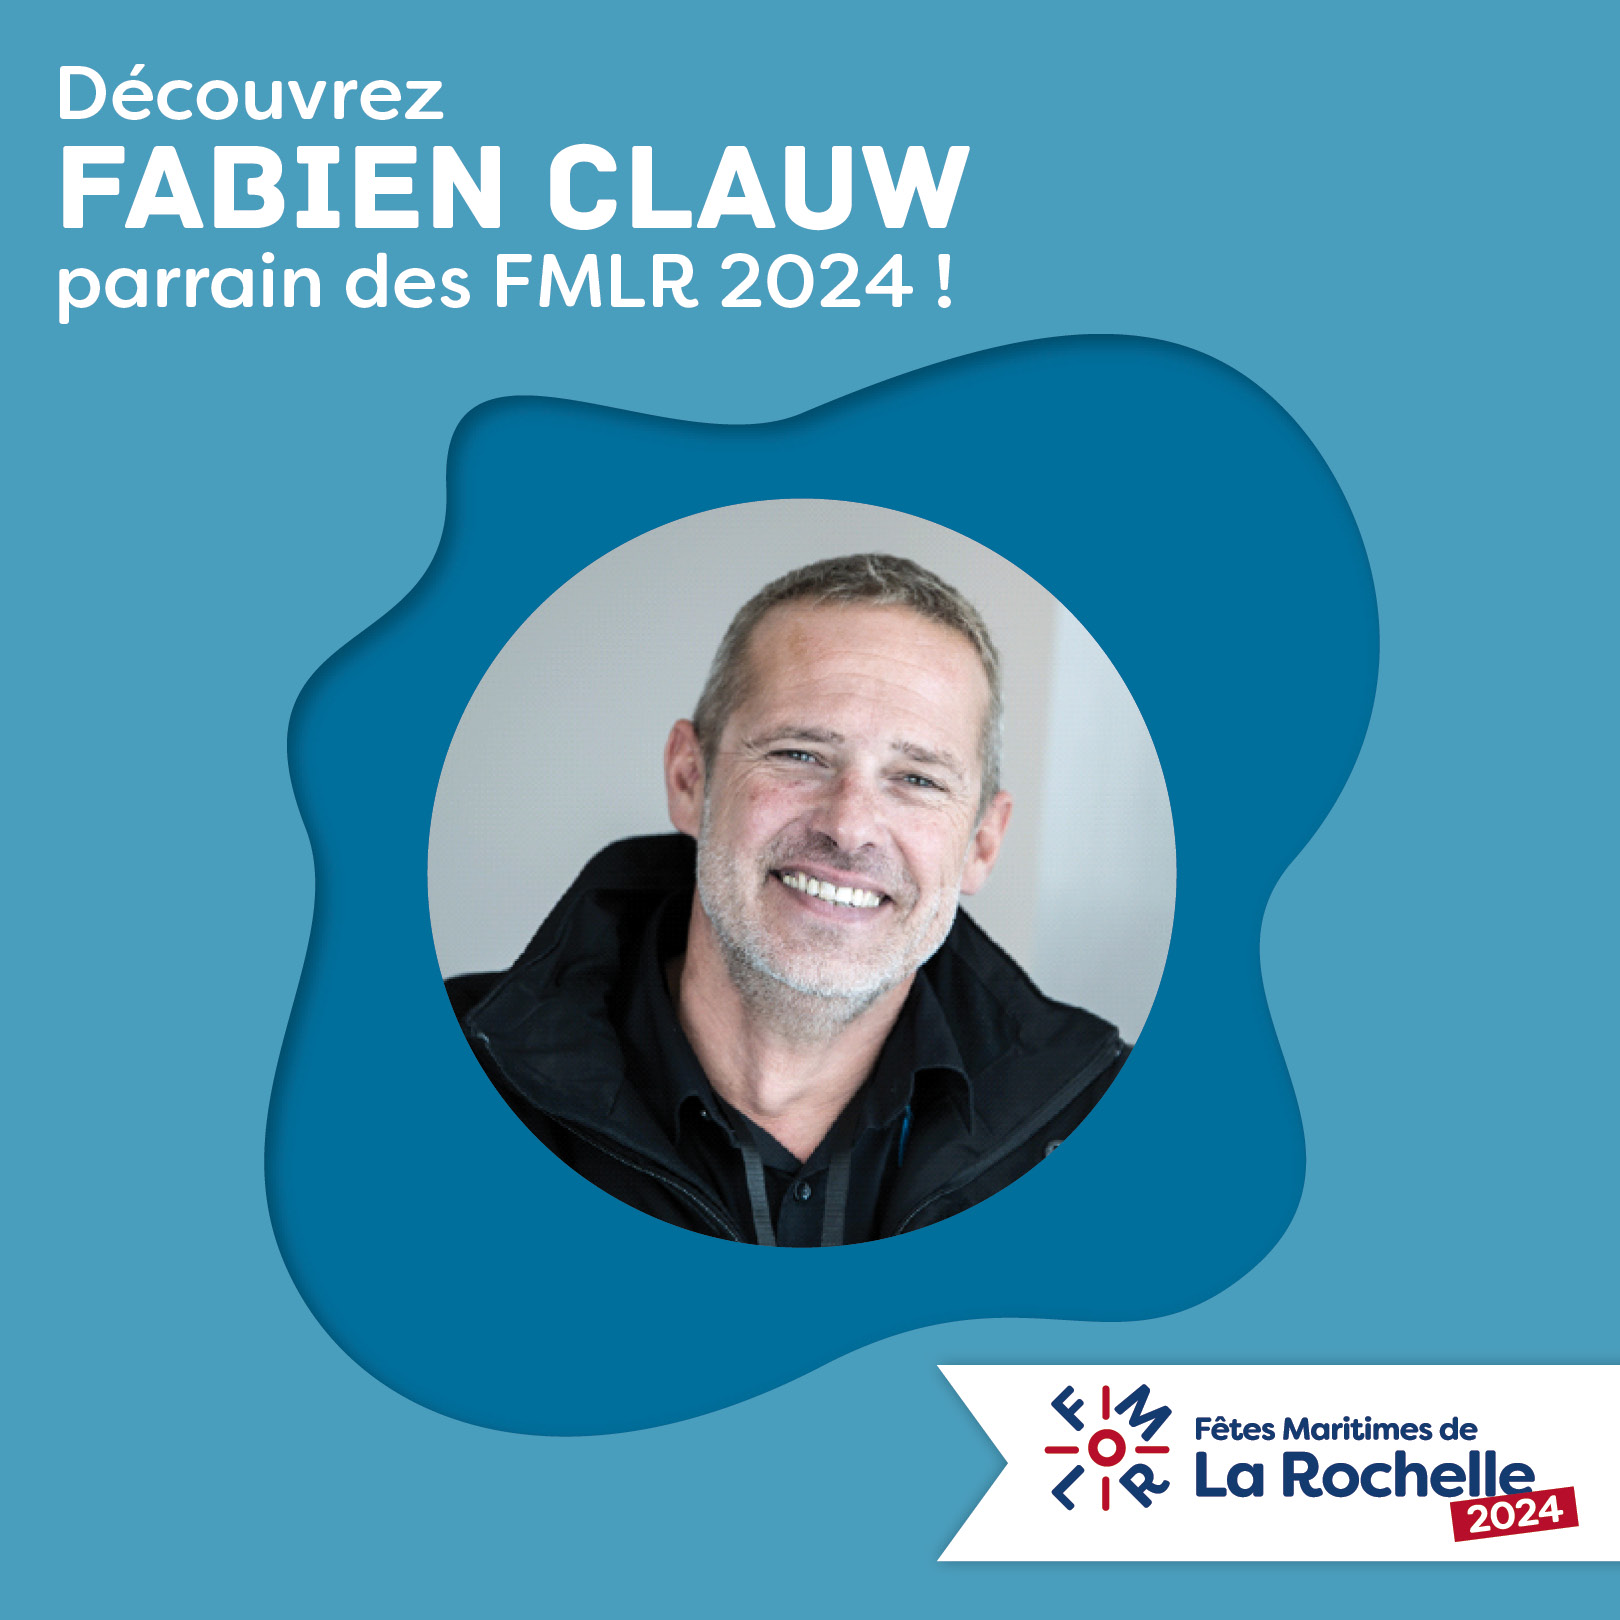 Fabien Clauw, parrain des Fêtes Maritimes de La Rochelle 2024